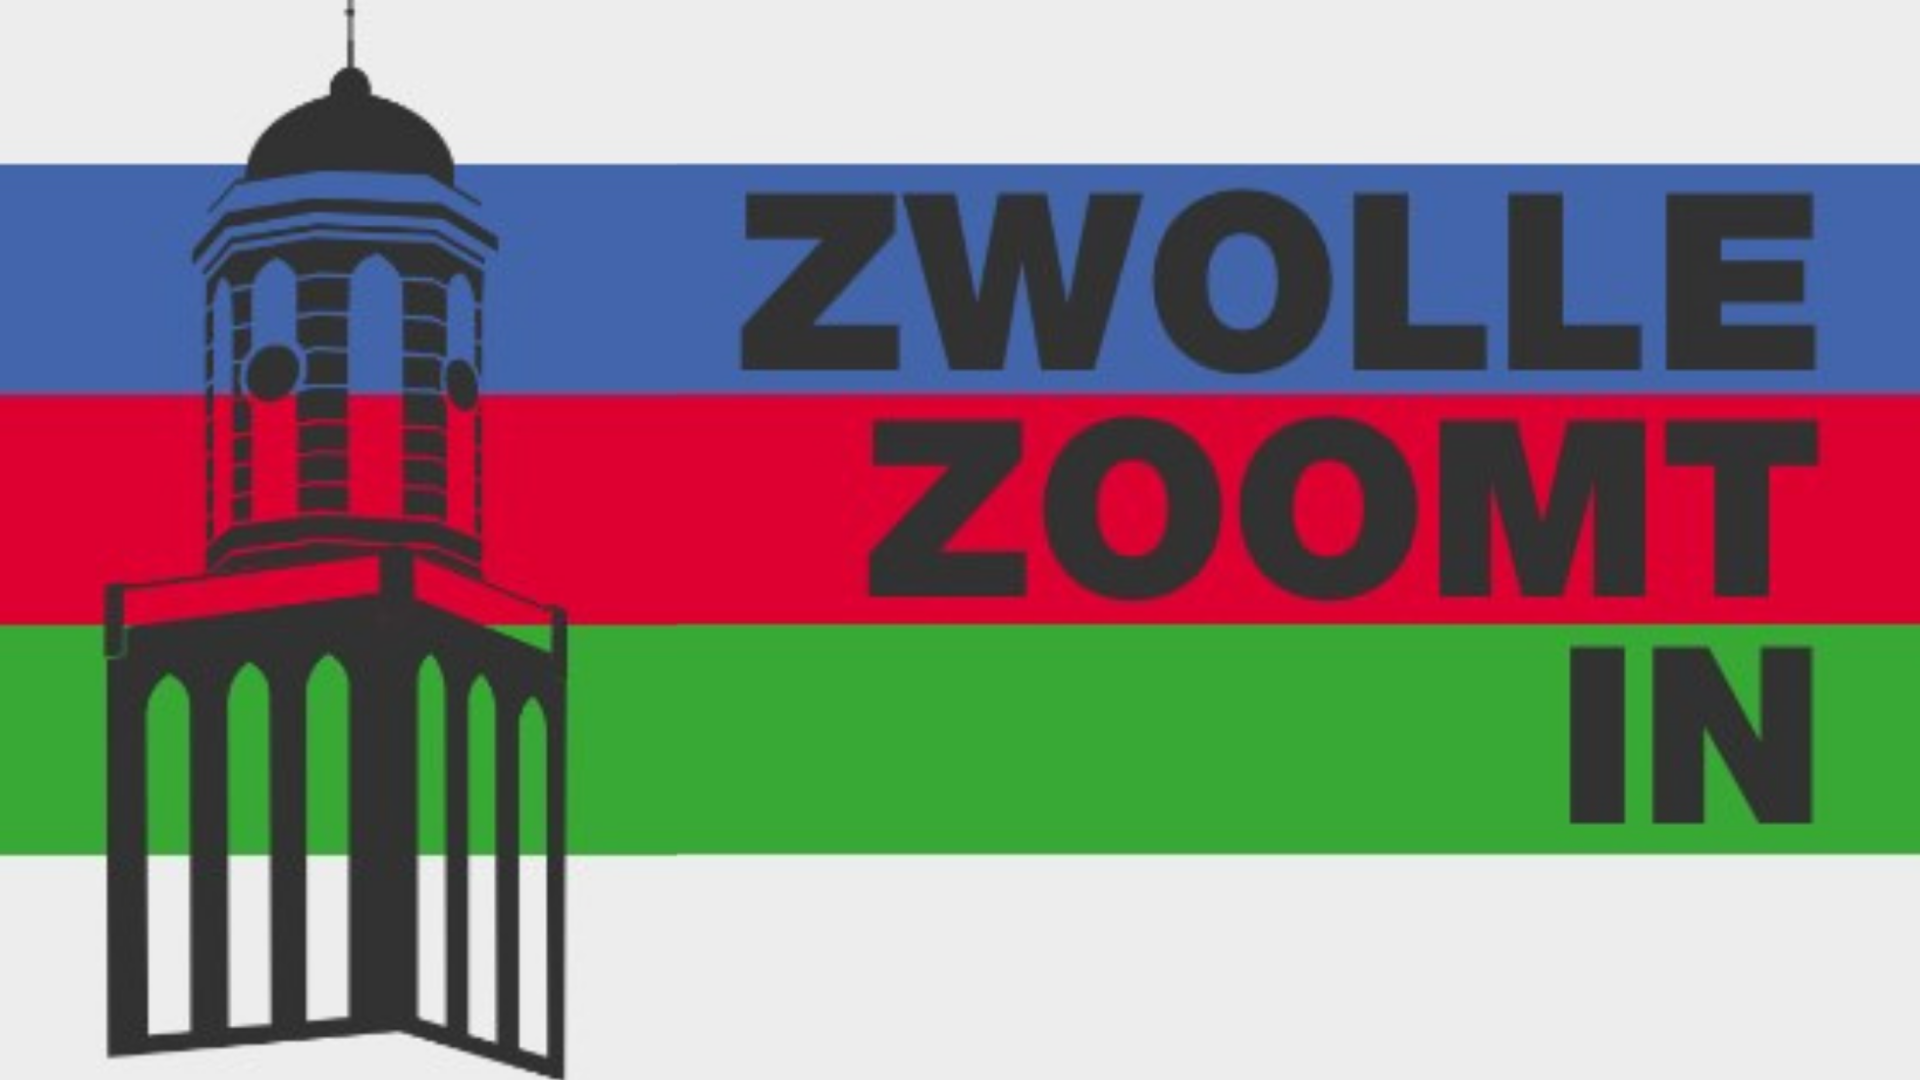 Het logo van Zwolle Zoomt in, met links een tekening van de Peperbus en op de achtergrond banen in de kleuren blauw, rood en groen.